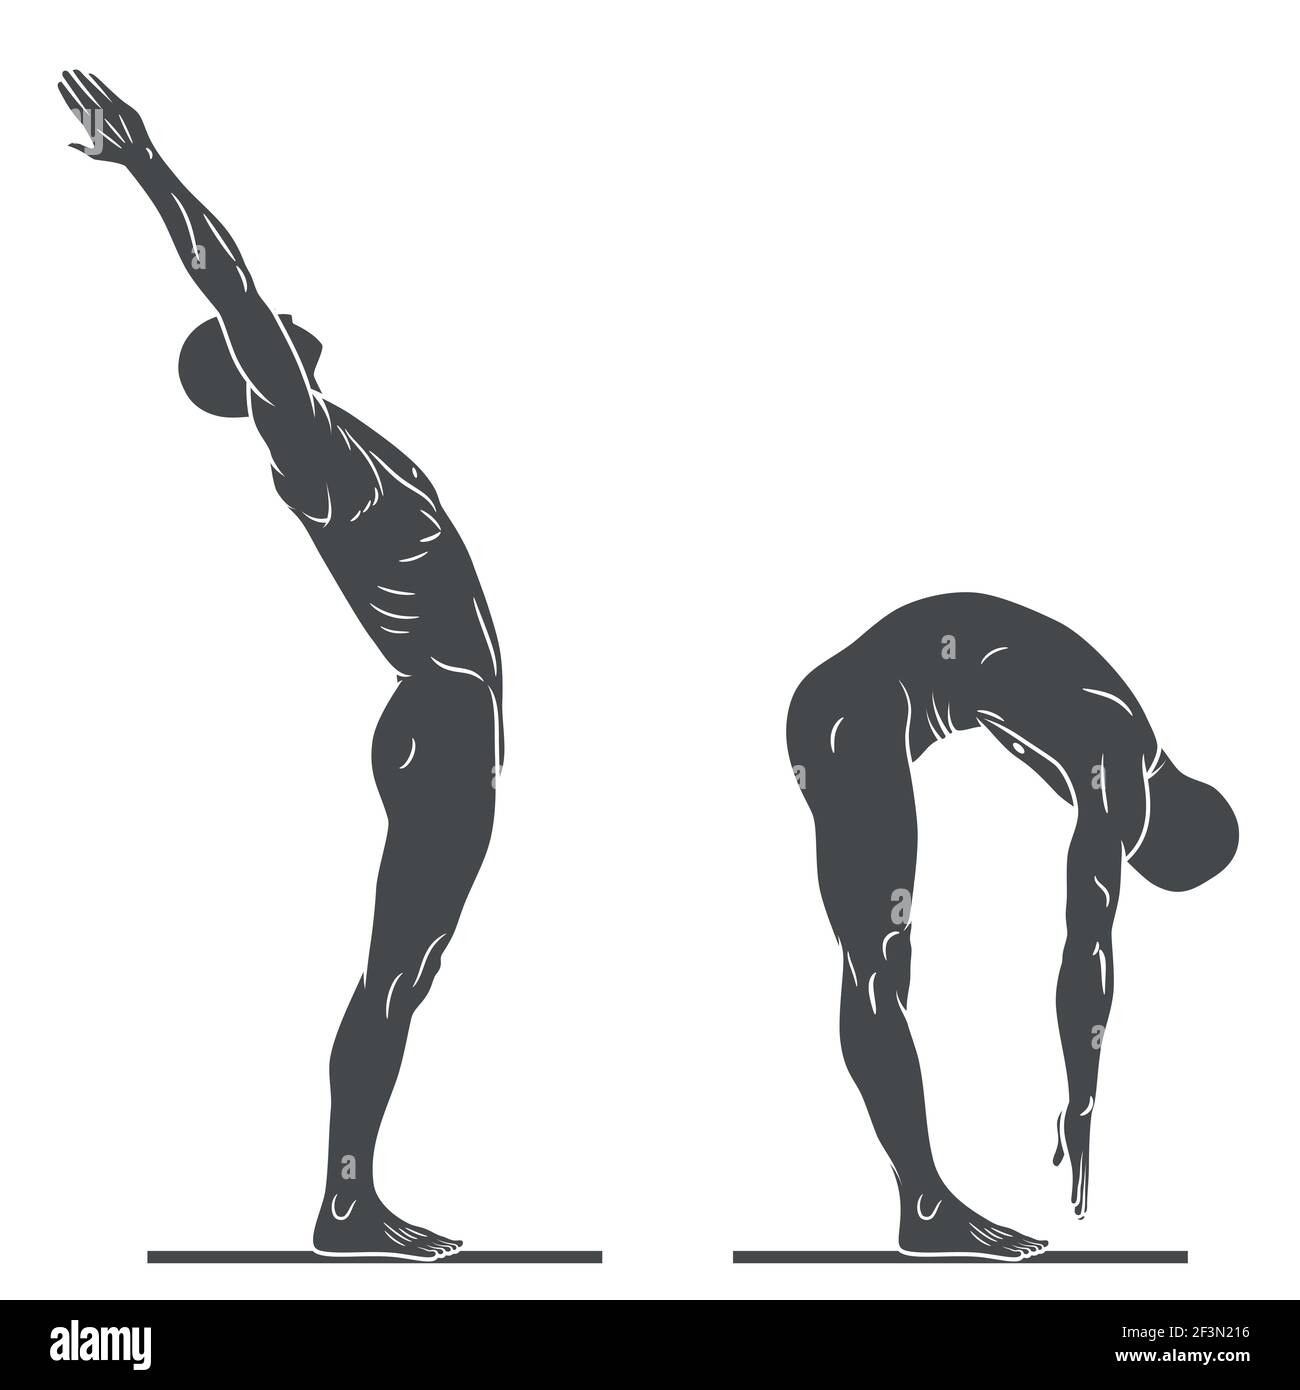 Silhouette des menschlichen Körpers in Bewegung Pose, Person, die körperliche Bewegung, Person in guter körperlicher Verfassung, schwarz und weiß Stock Vektor